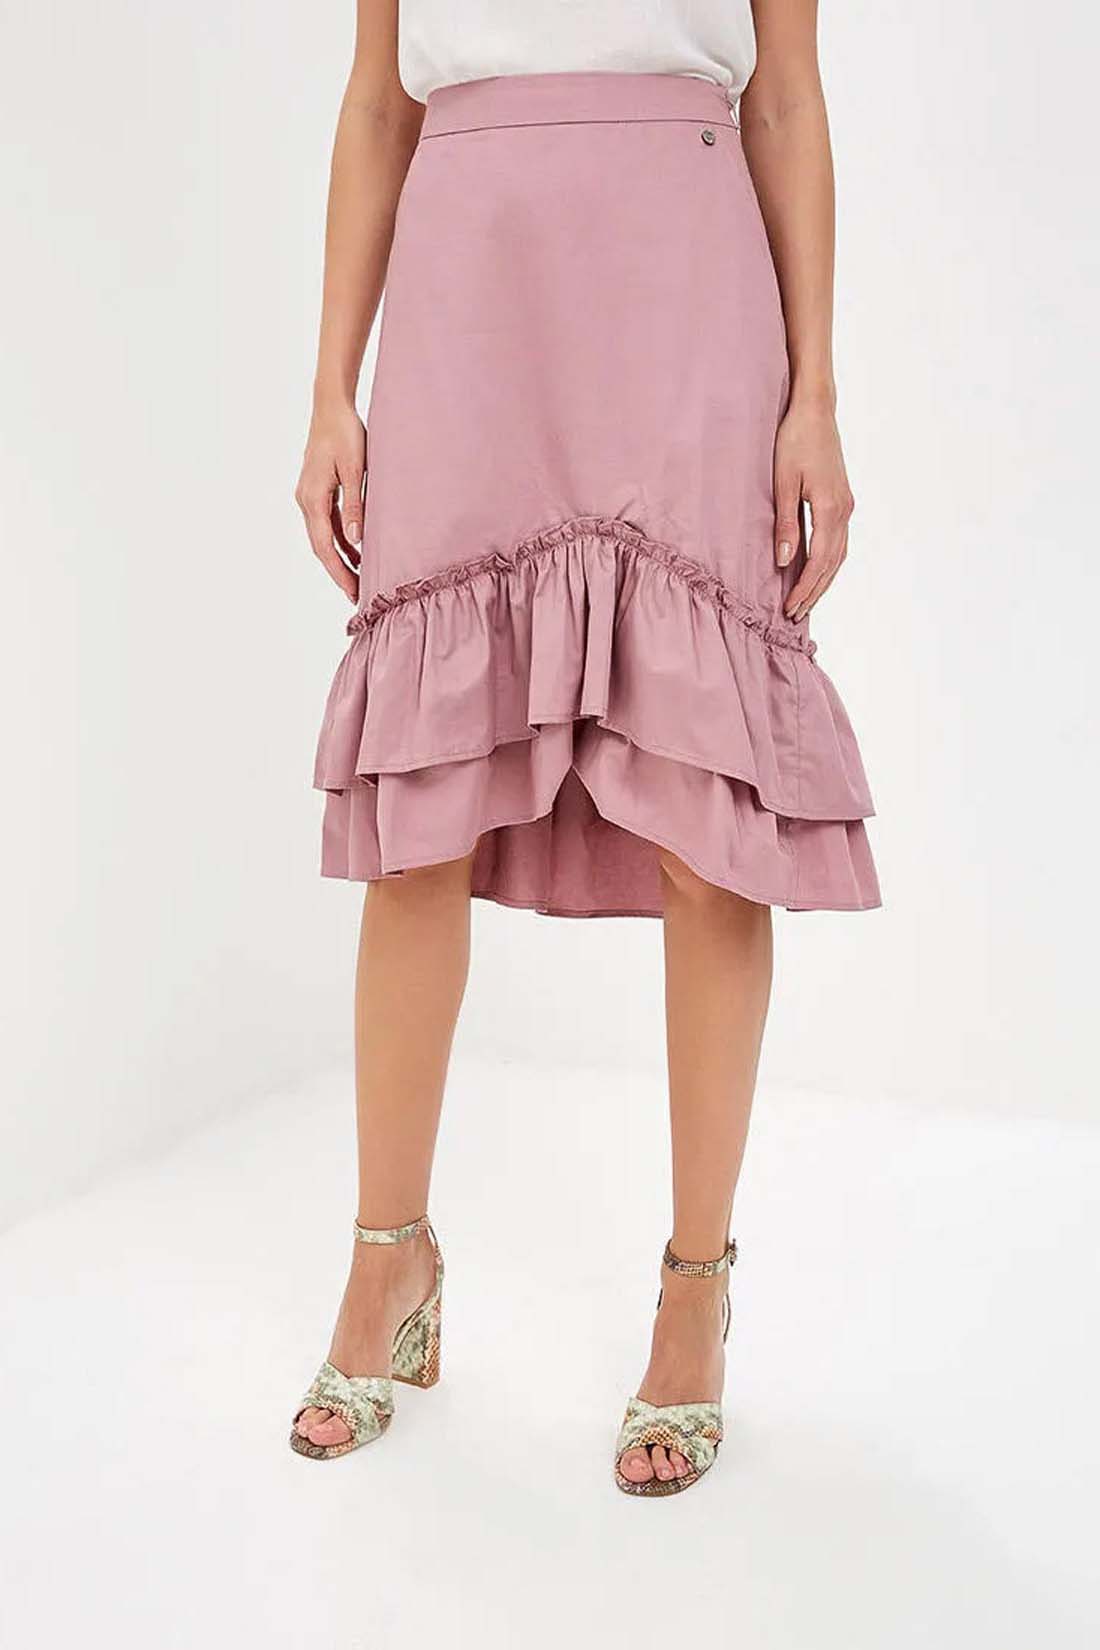 Розовая юбка с оборками (арт. baon B479018), размер M, цвет розовый Розовая юбка с оборками (арт. baon B479018) - фото 1